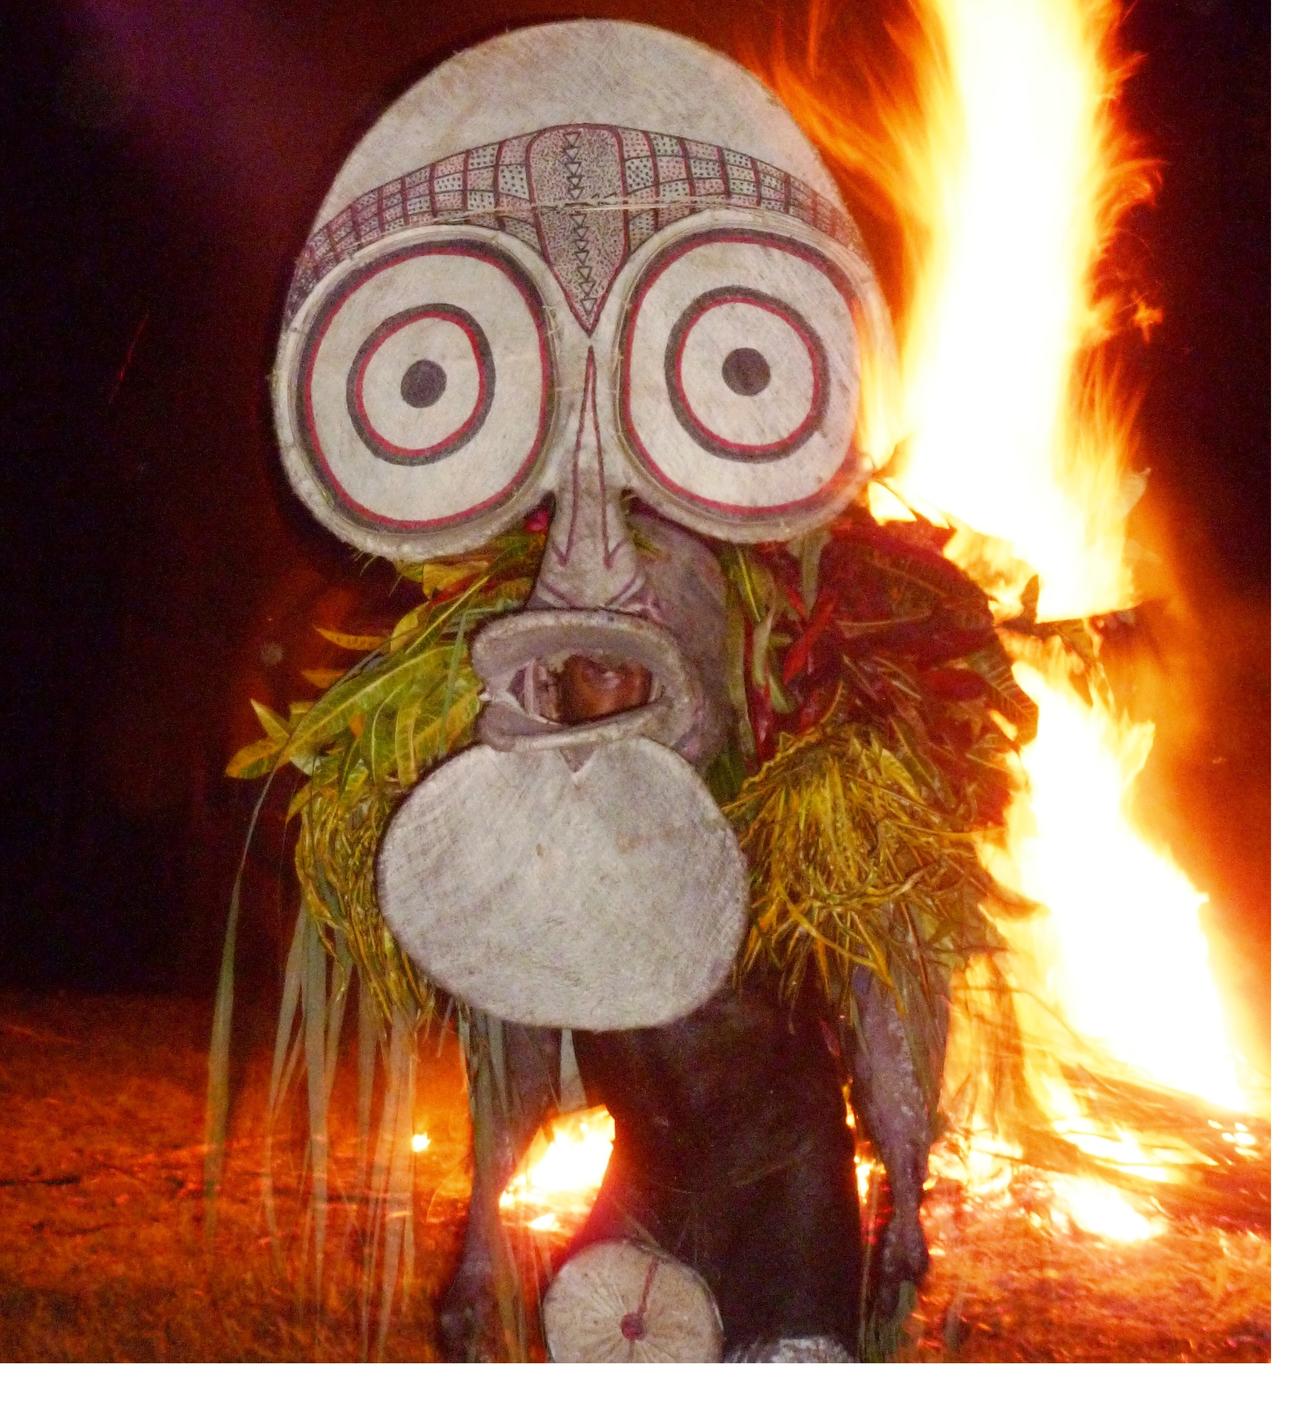 Fire festival in Papua New Guinea